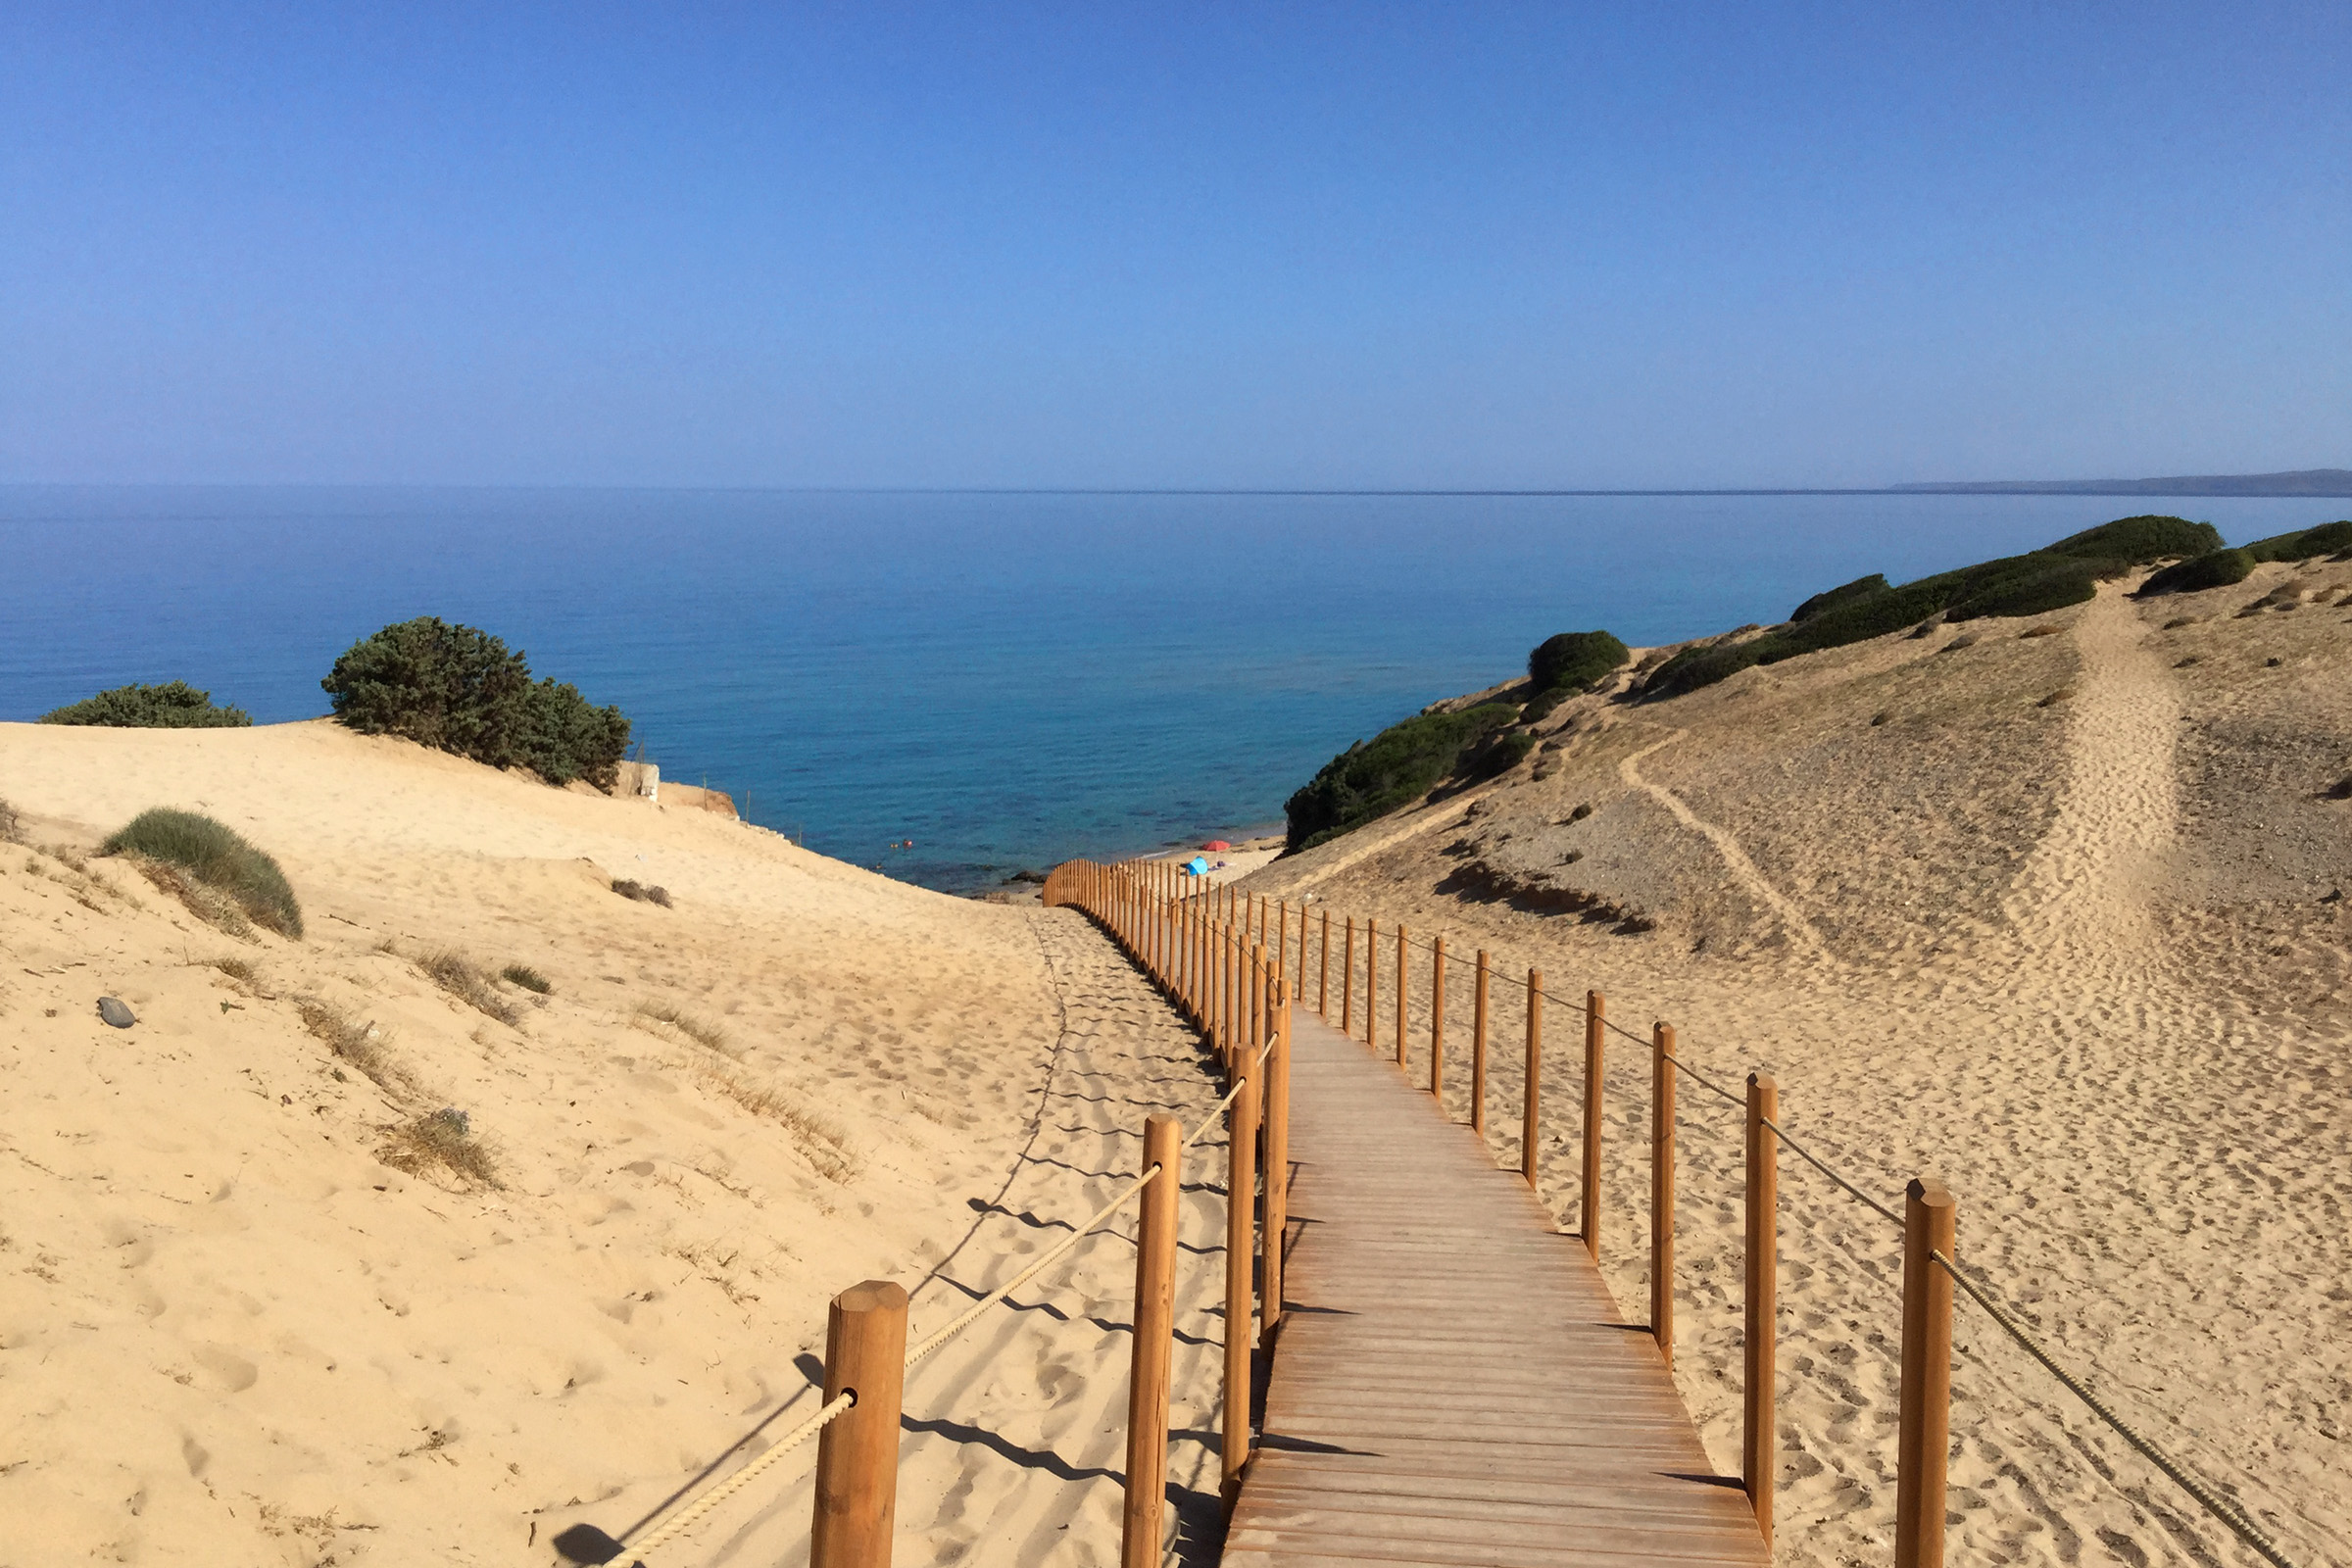 (Italiano) Sardegna, spiagge accessibili senza barriere architettoniche: « Una battaglia di civiltà »